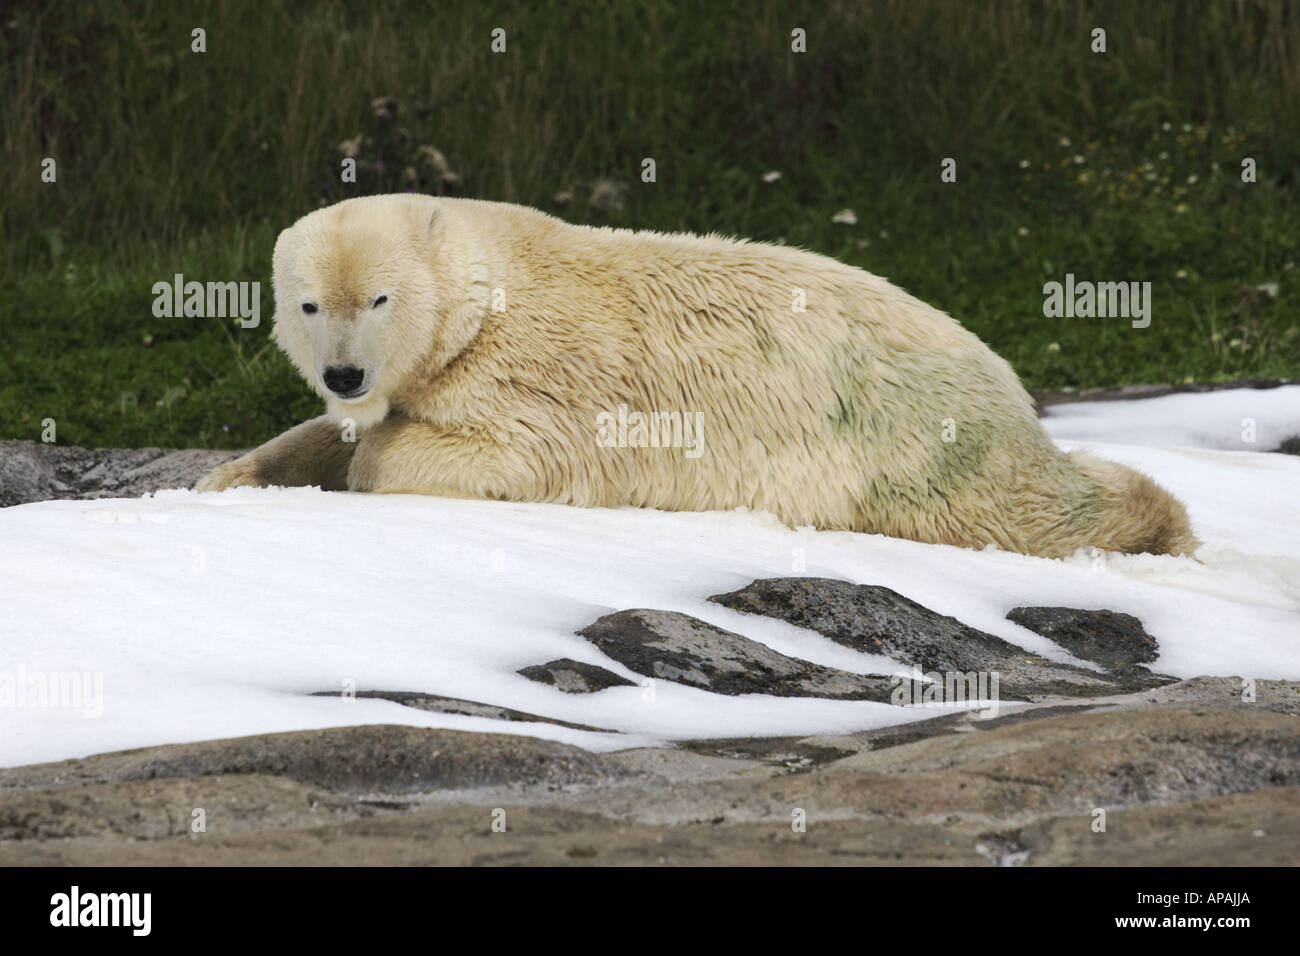 El oso polar Ursus maritimus tumbado sobre rocas cubiertas de hielo Foto de stock